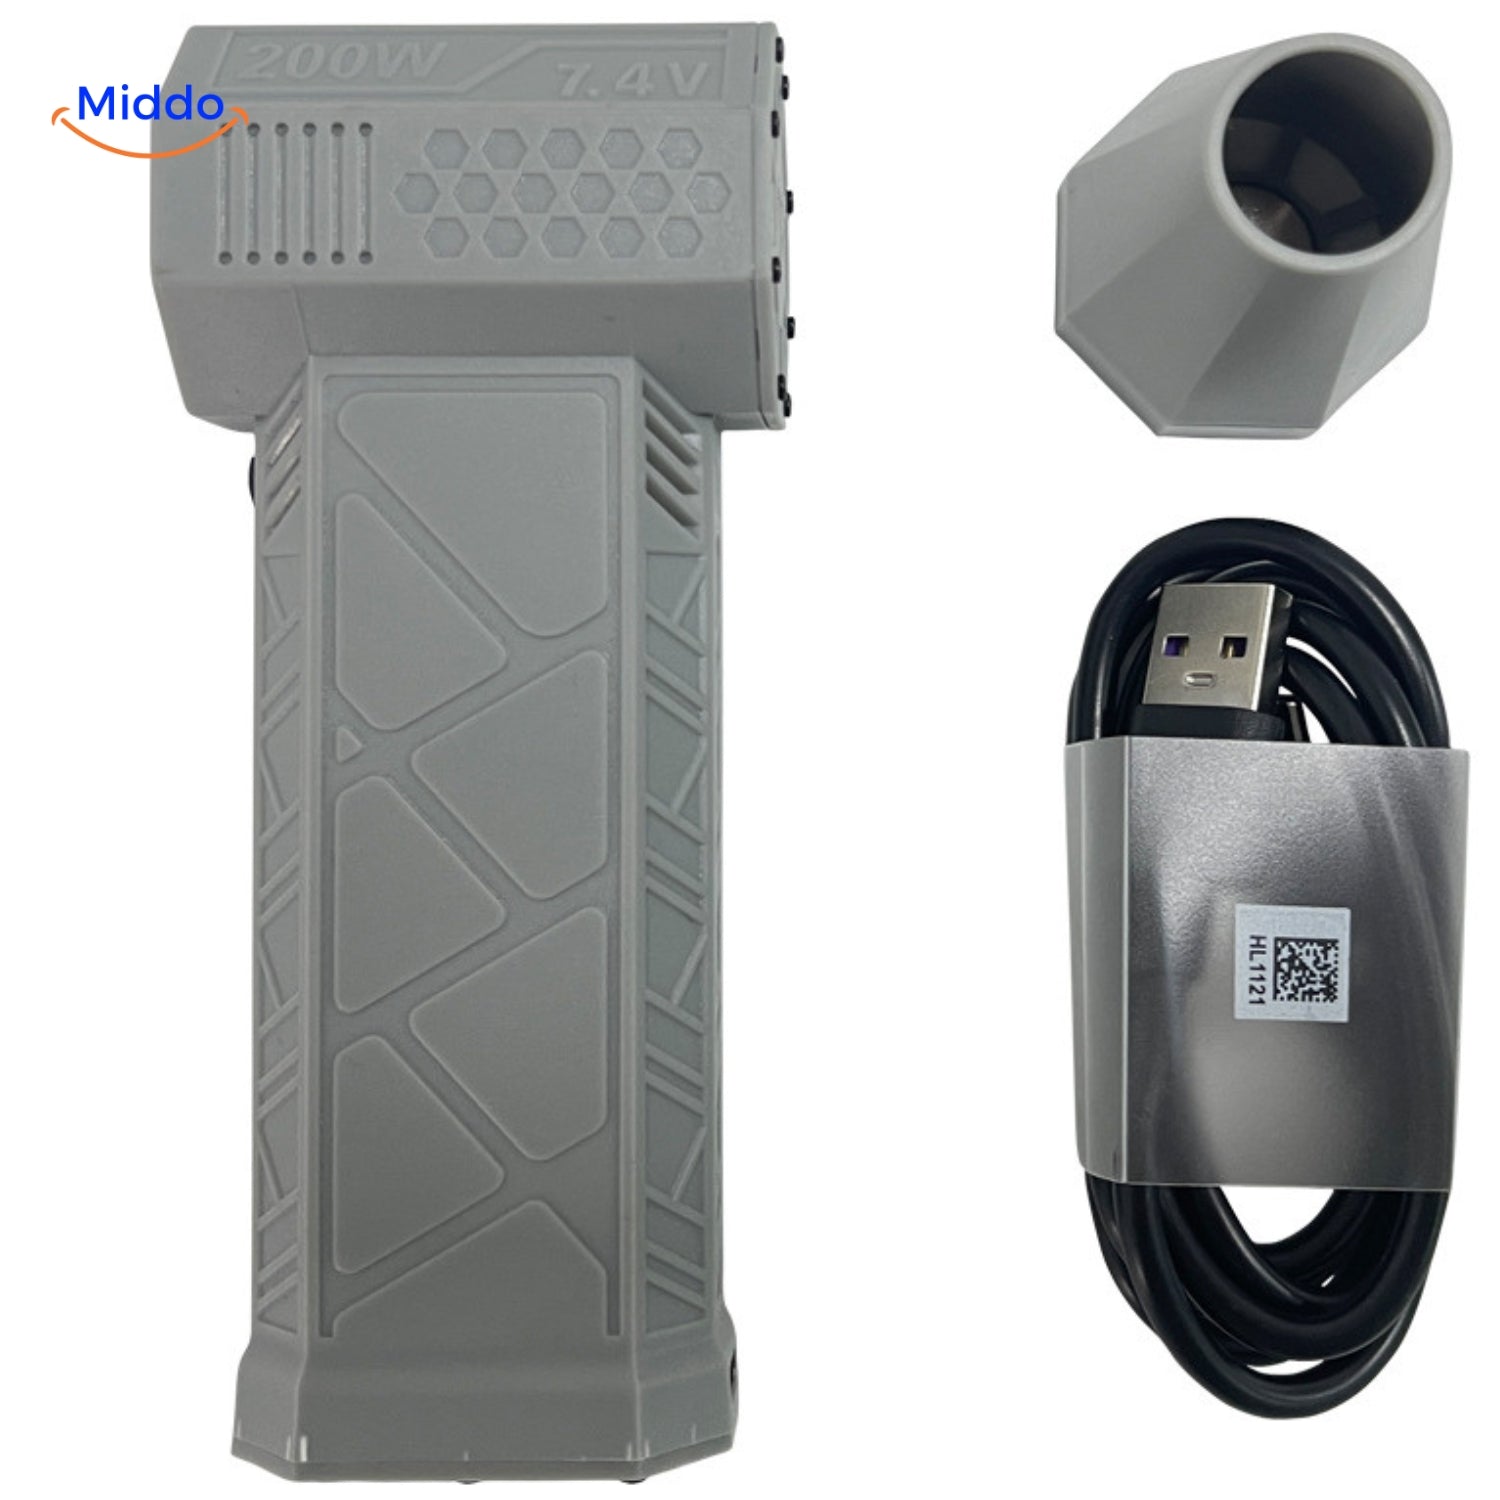 TurboJet Pro luchtblazer in grijs met mondstuk en USB-oplaadkabel